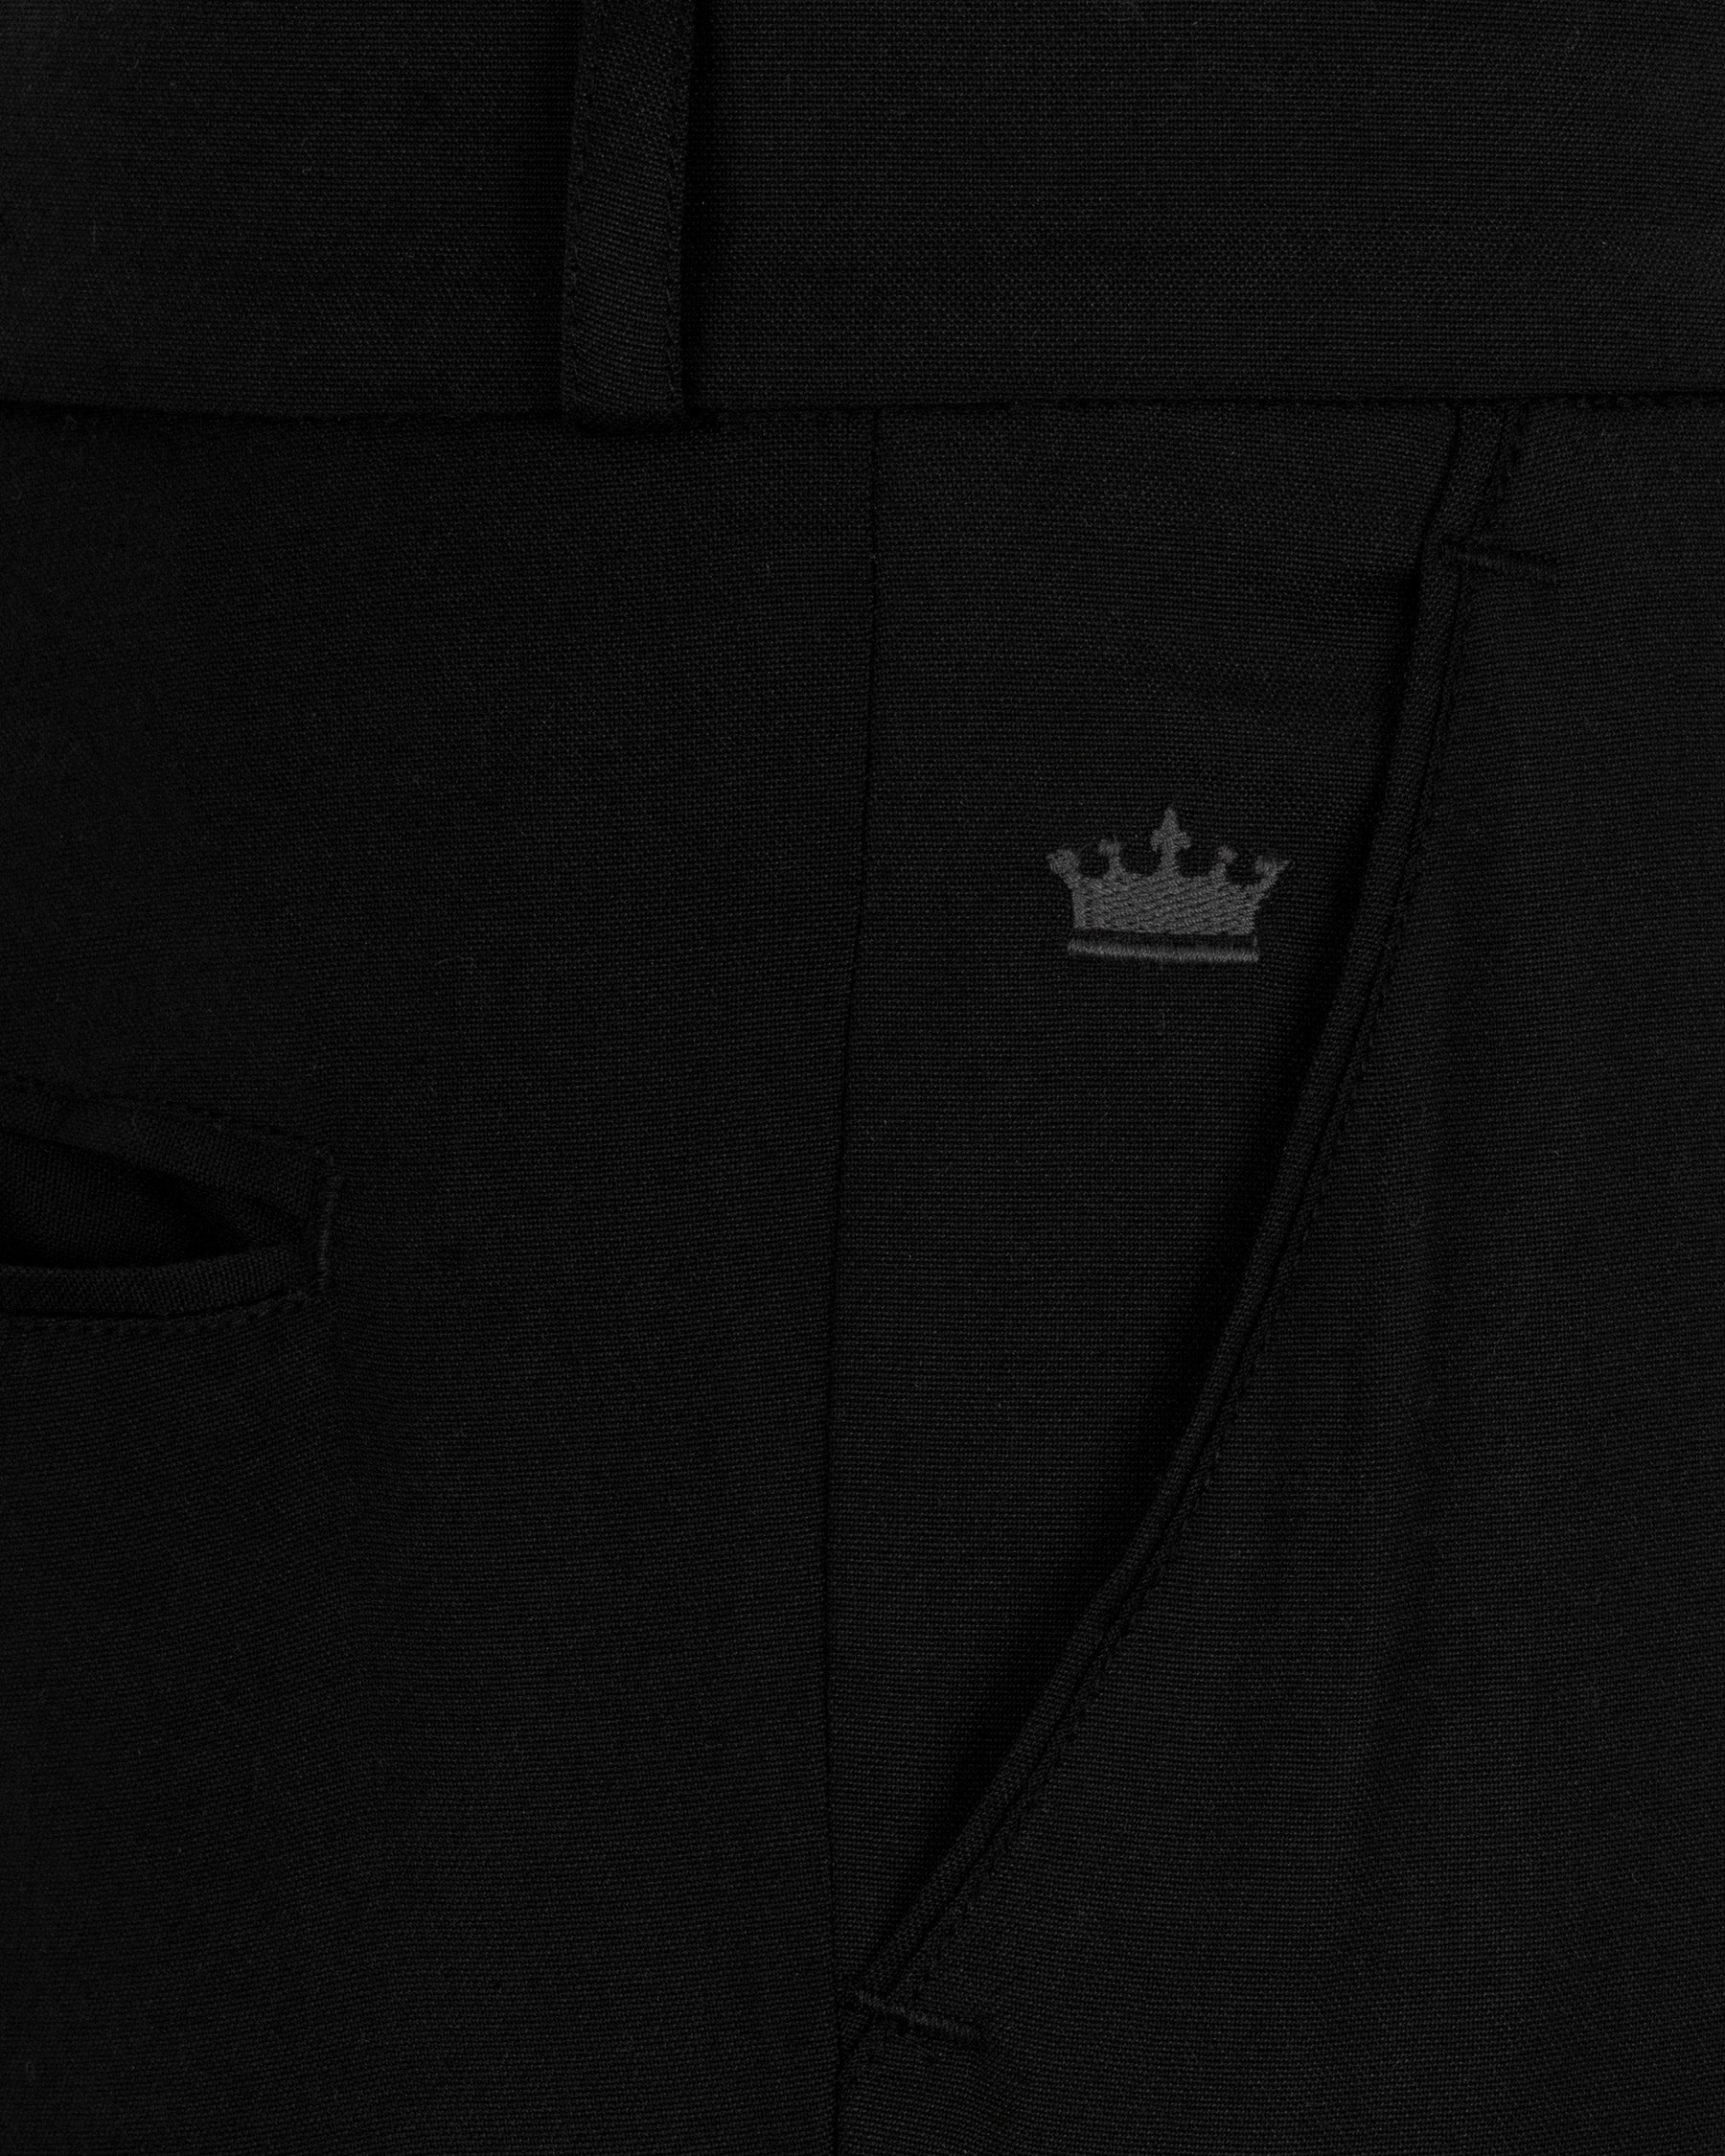 Jade Black Designer Wool Rich Suit ST1587-D31-36, ST1587-D31-38, ST1587-D31-40, ST1587-D31-42, ST1587-D31-44, ST1587-D31-46, ST1587-D31-48, ST1587-D31-50, ST1587-D31-52, ST1587-D31-54, ST1587-D31-56, ST1587-D31-58, ST1587-D31-60